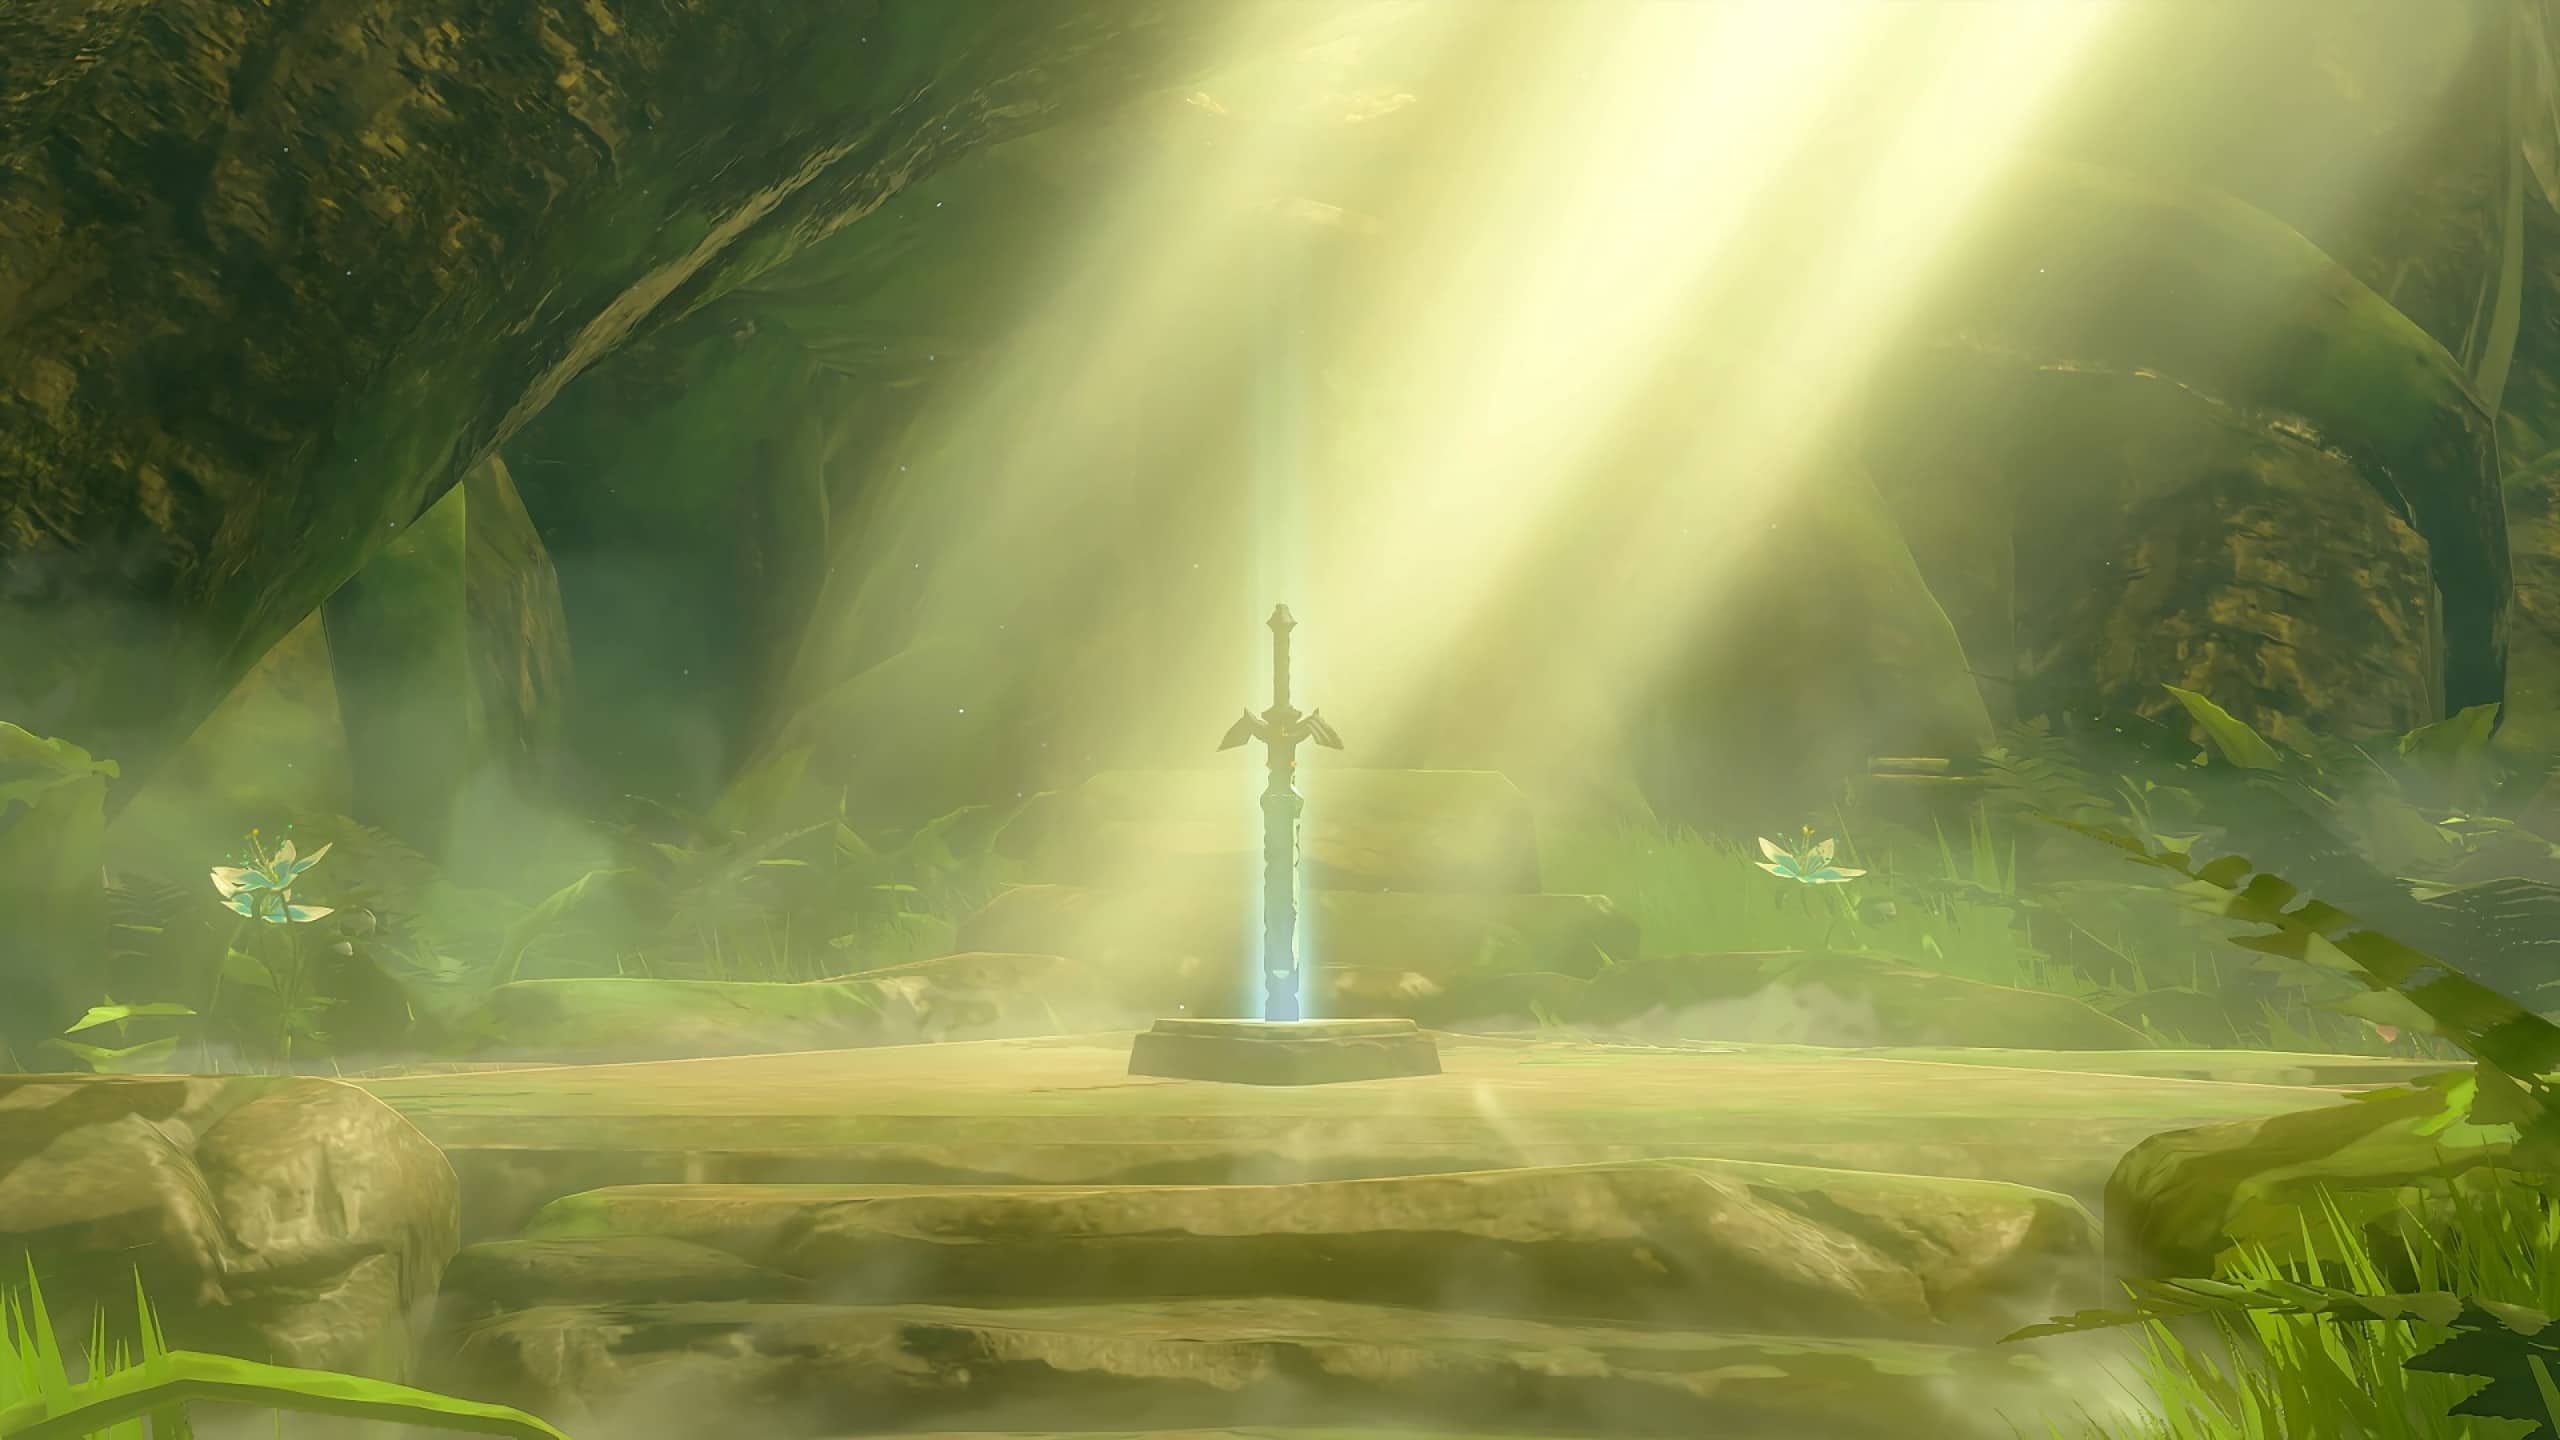 Nintendo ha compartido este nuevo vídeo promocional de Zelda: Breath of the Wild